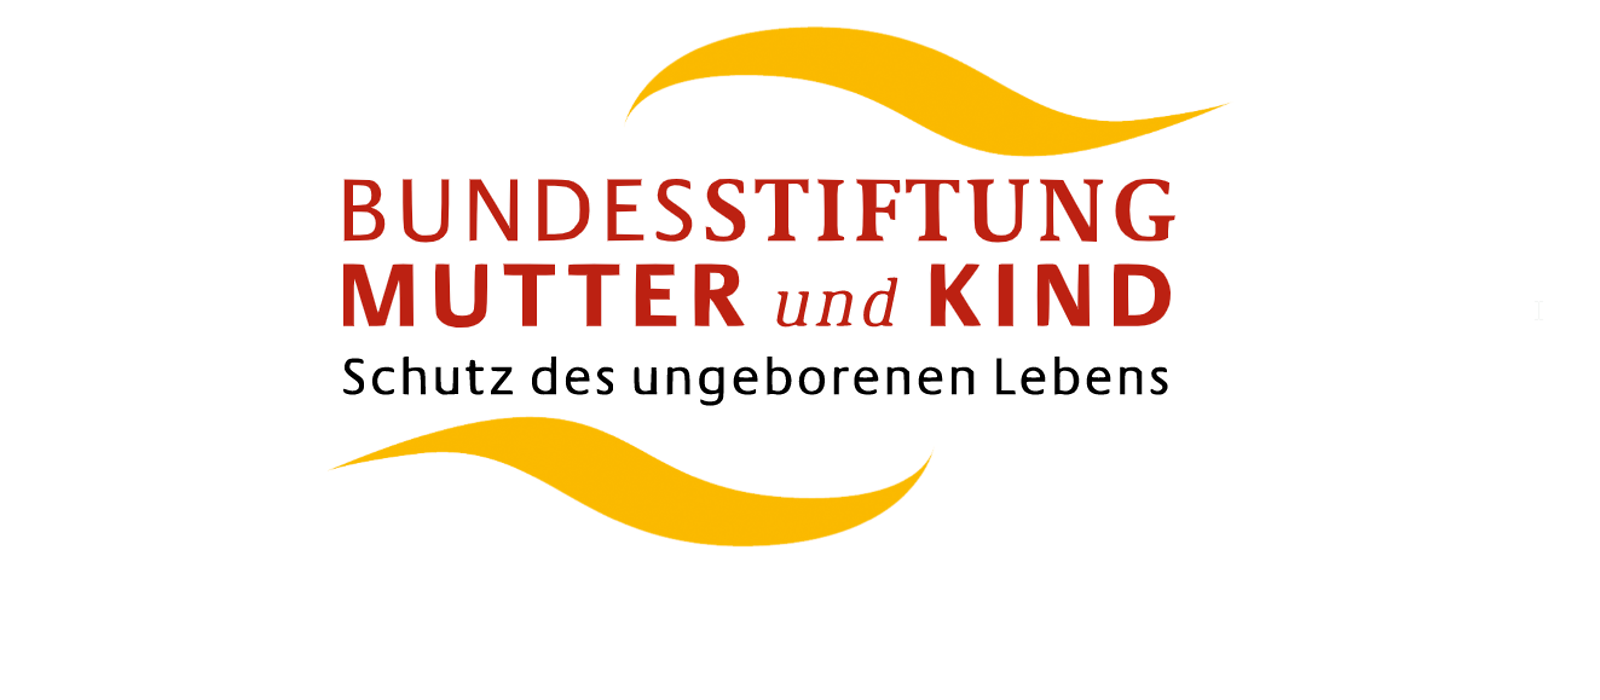 Logo der Bundesstiftung Mutter und Kind